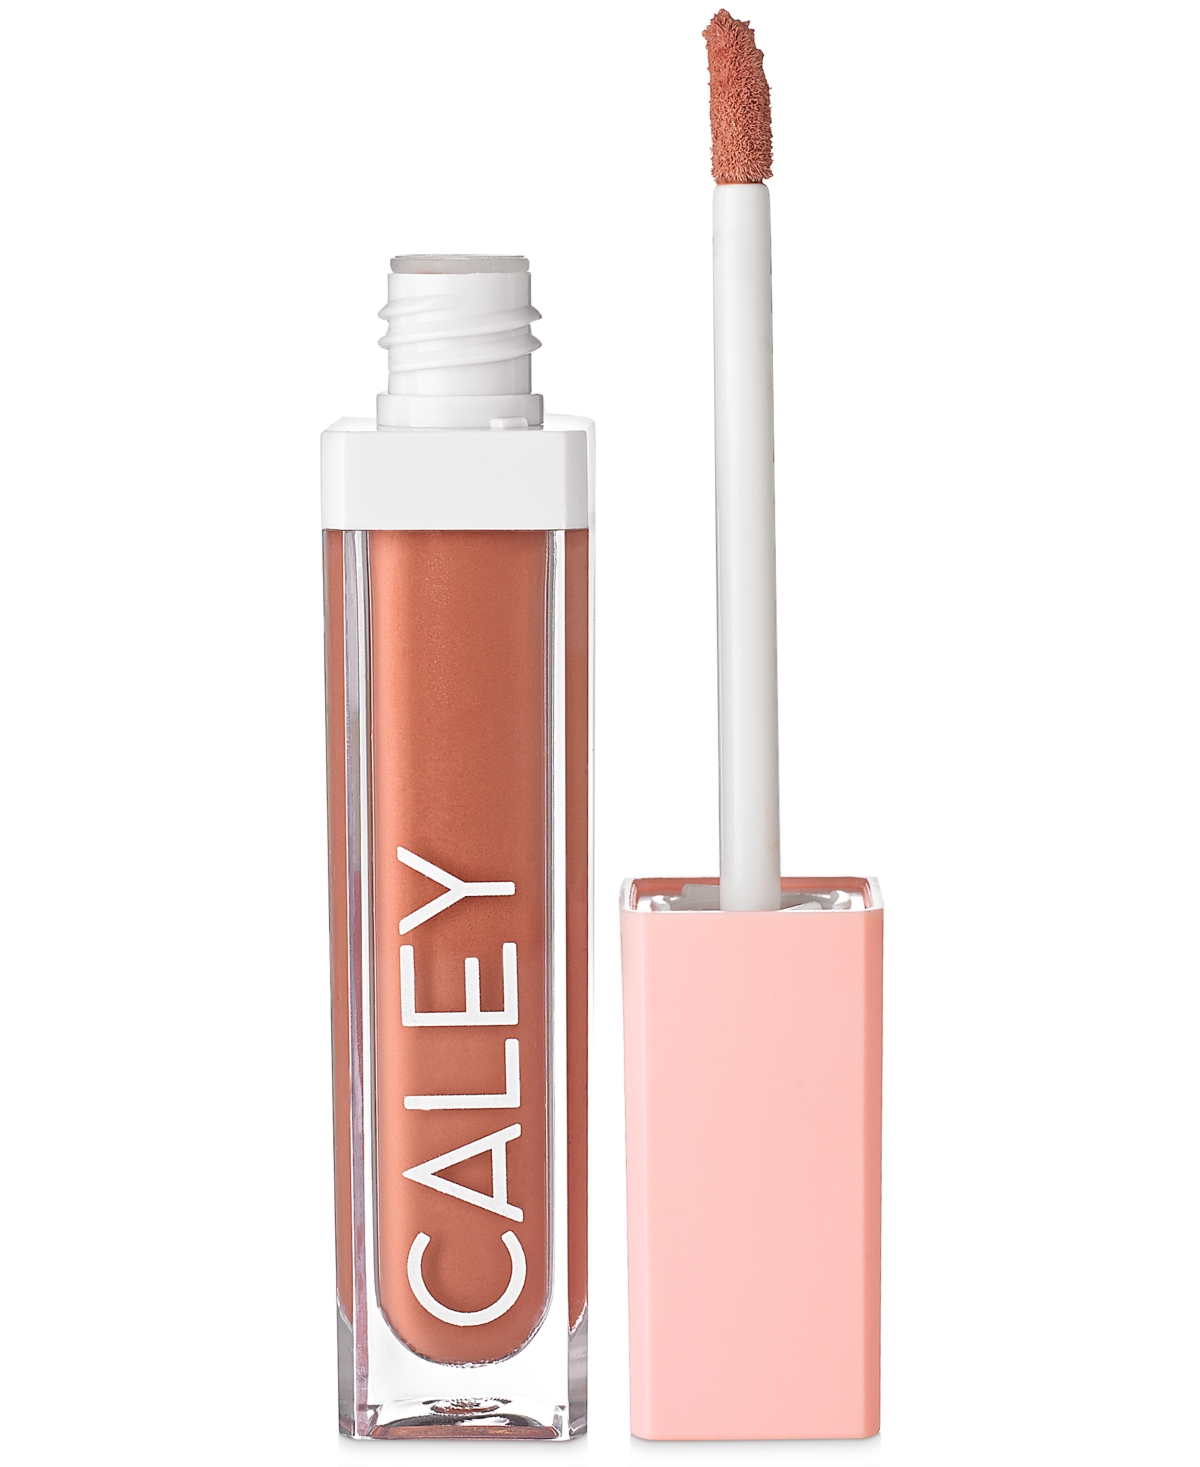 Caley Cosmetics Plumping Color Crush Natural Liquid Lip